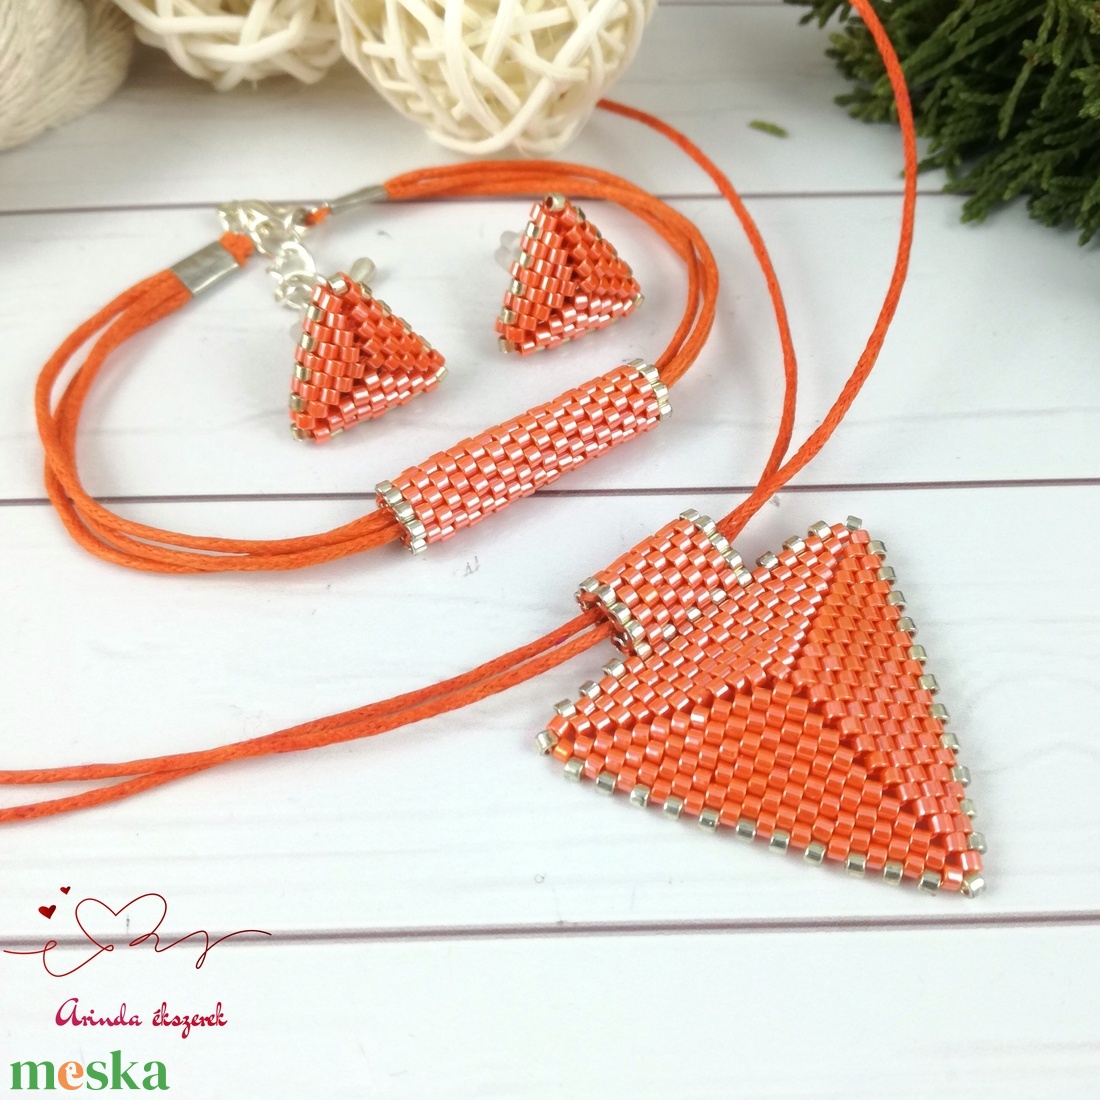 Narancs háromszög nyaklánc karkötő fülbevaló egyedi gyöngyékszer anyák napja ballagás évzáró karácsony szülinap névnap  - ékszer - ékszerszett - Meska.hu